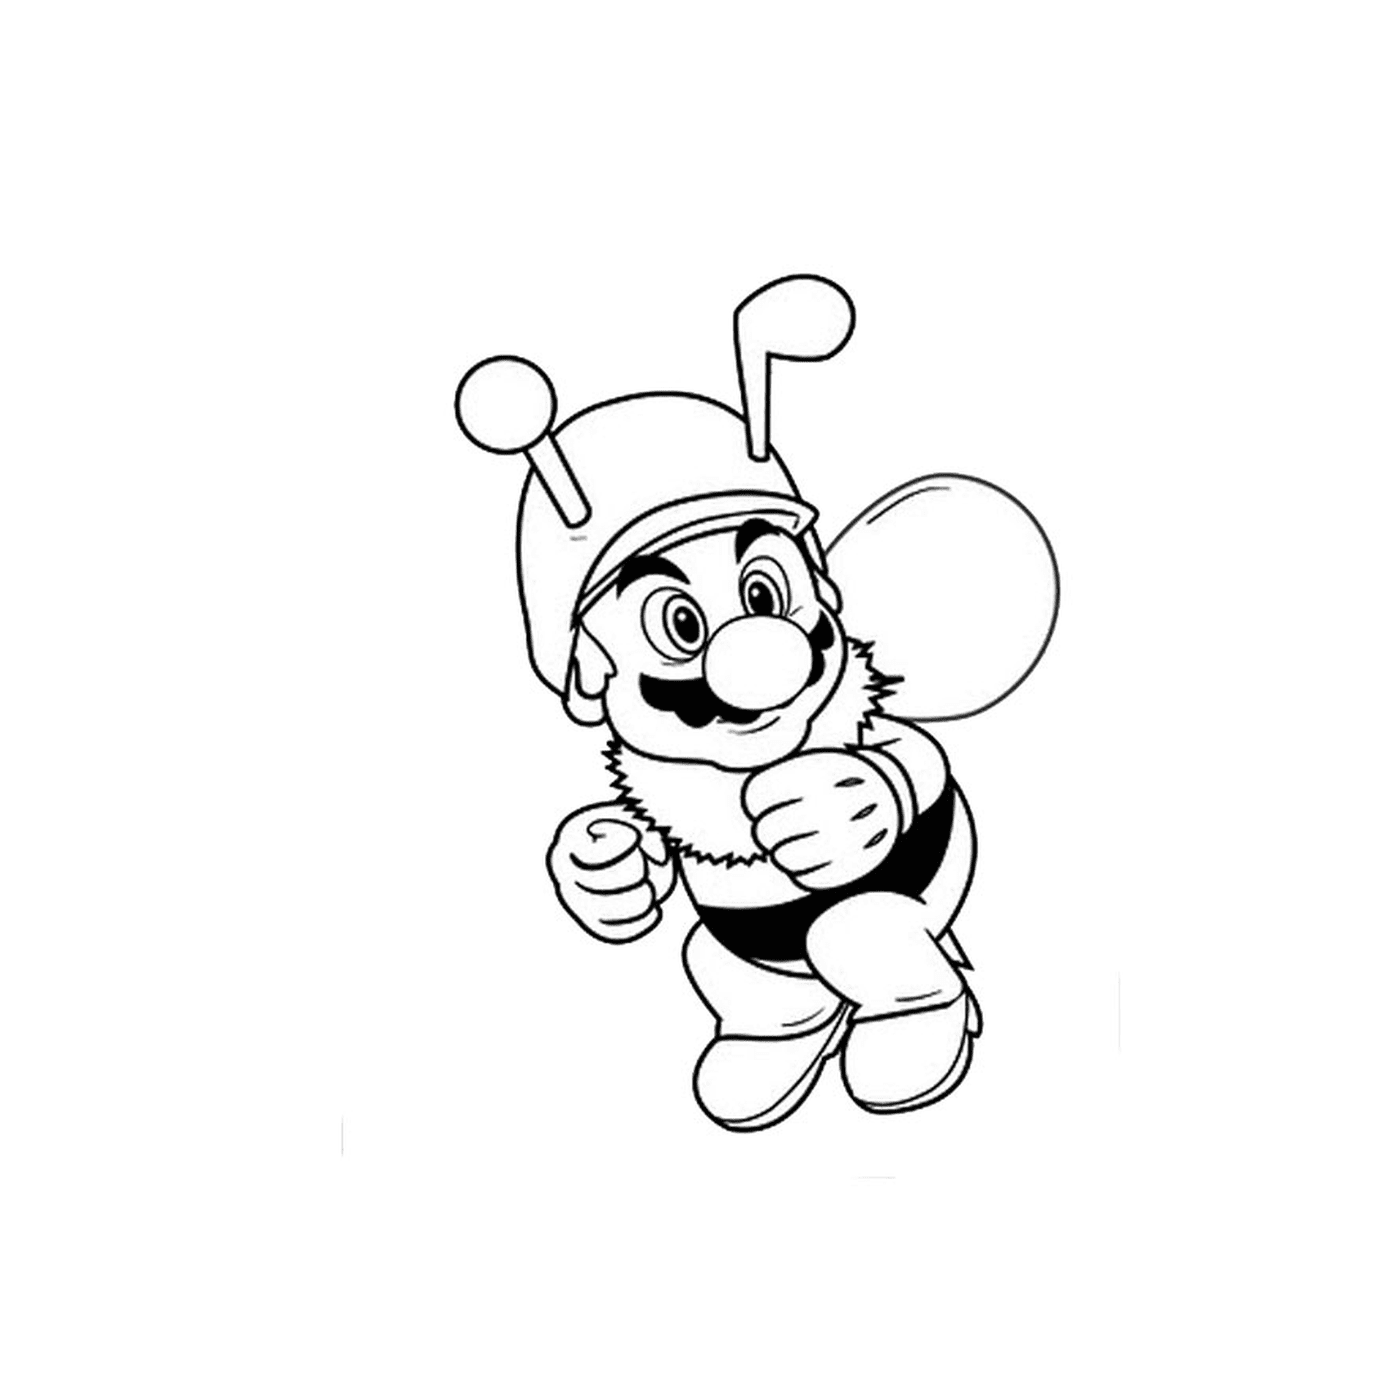  Um homem abelha 